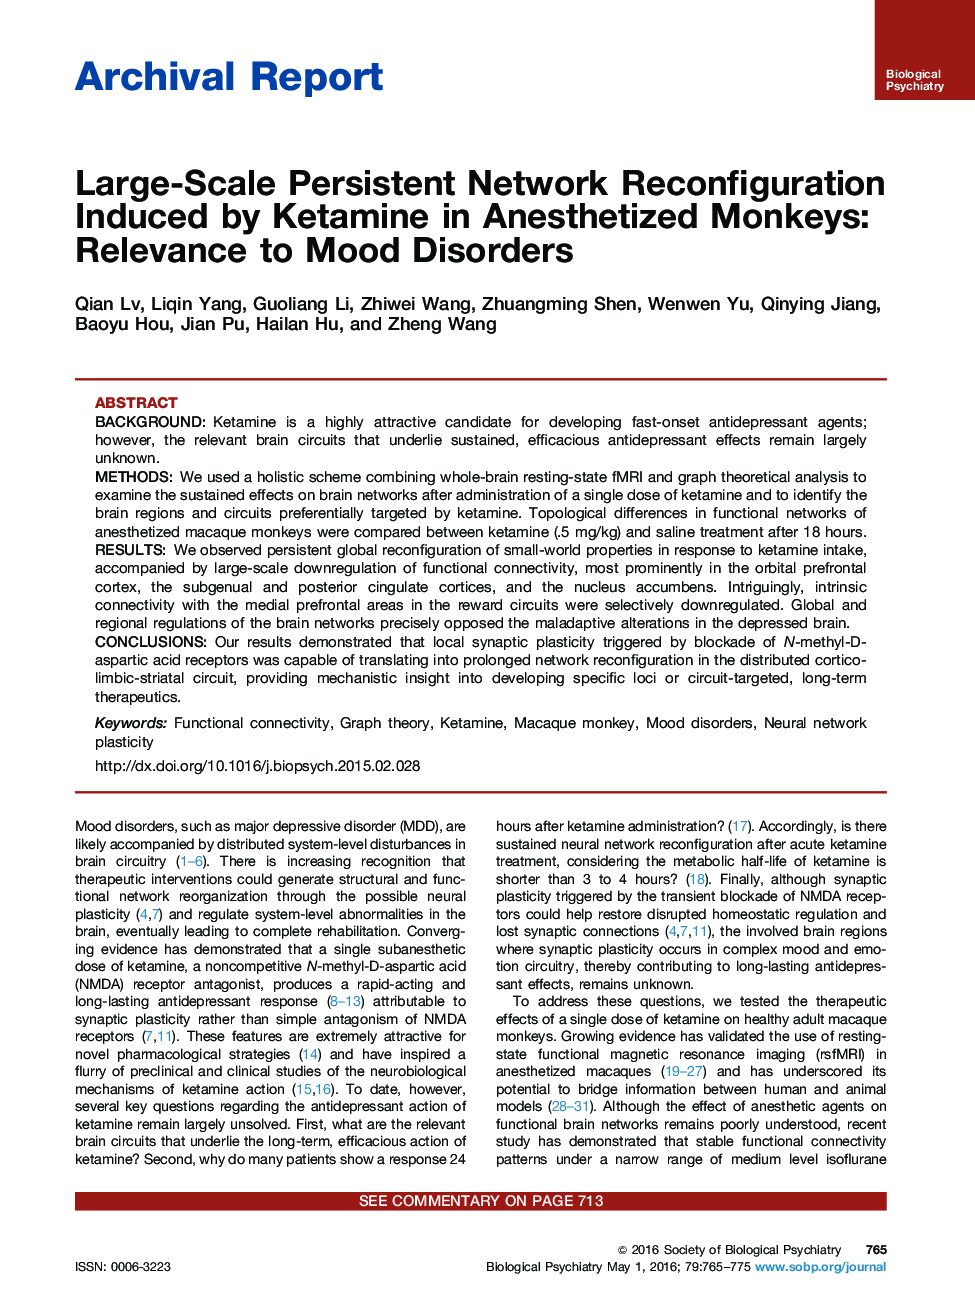 تنظیم مقیاس پذیری شبکه مستمر ناشی از کتامین در میمون های بیهوشی: مربوط به اختلالات رفتاری 